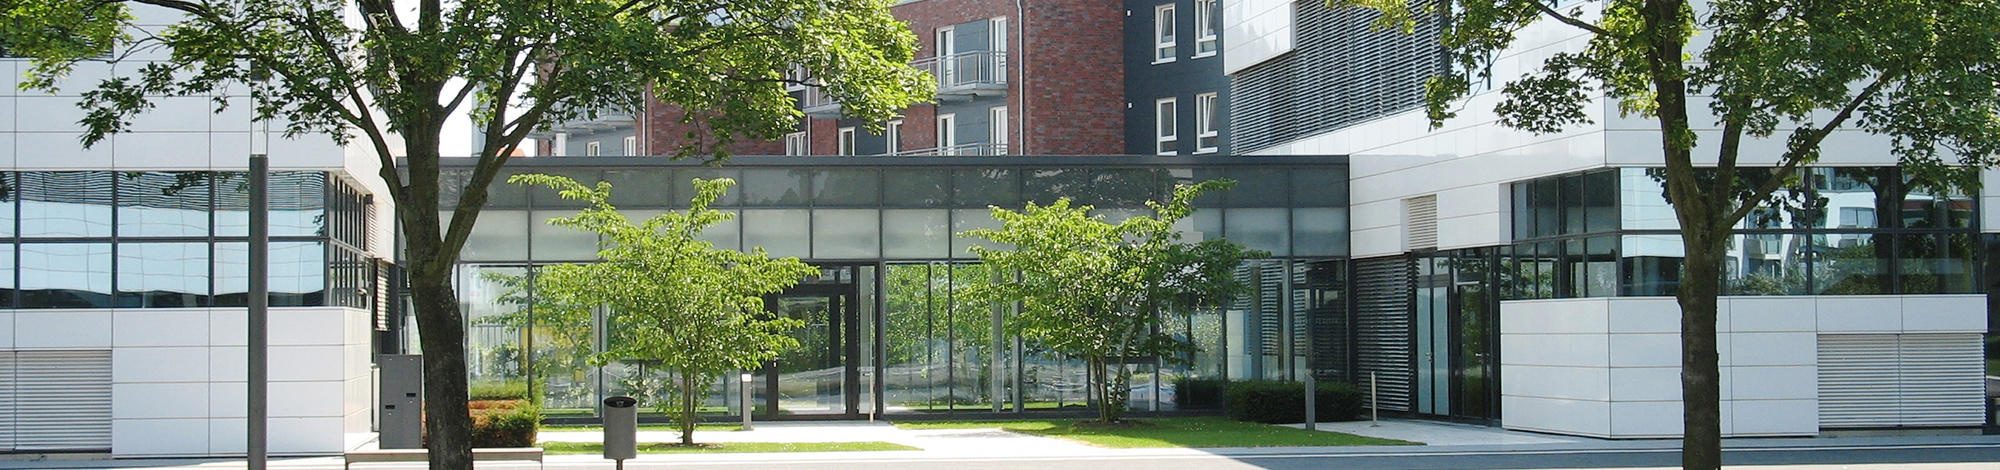 Uniwersytet Nauk Technicznych w Kleef